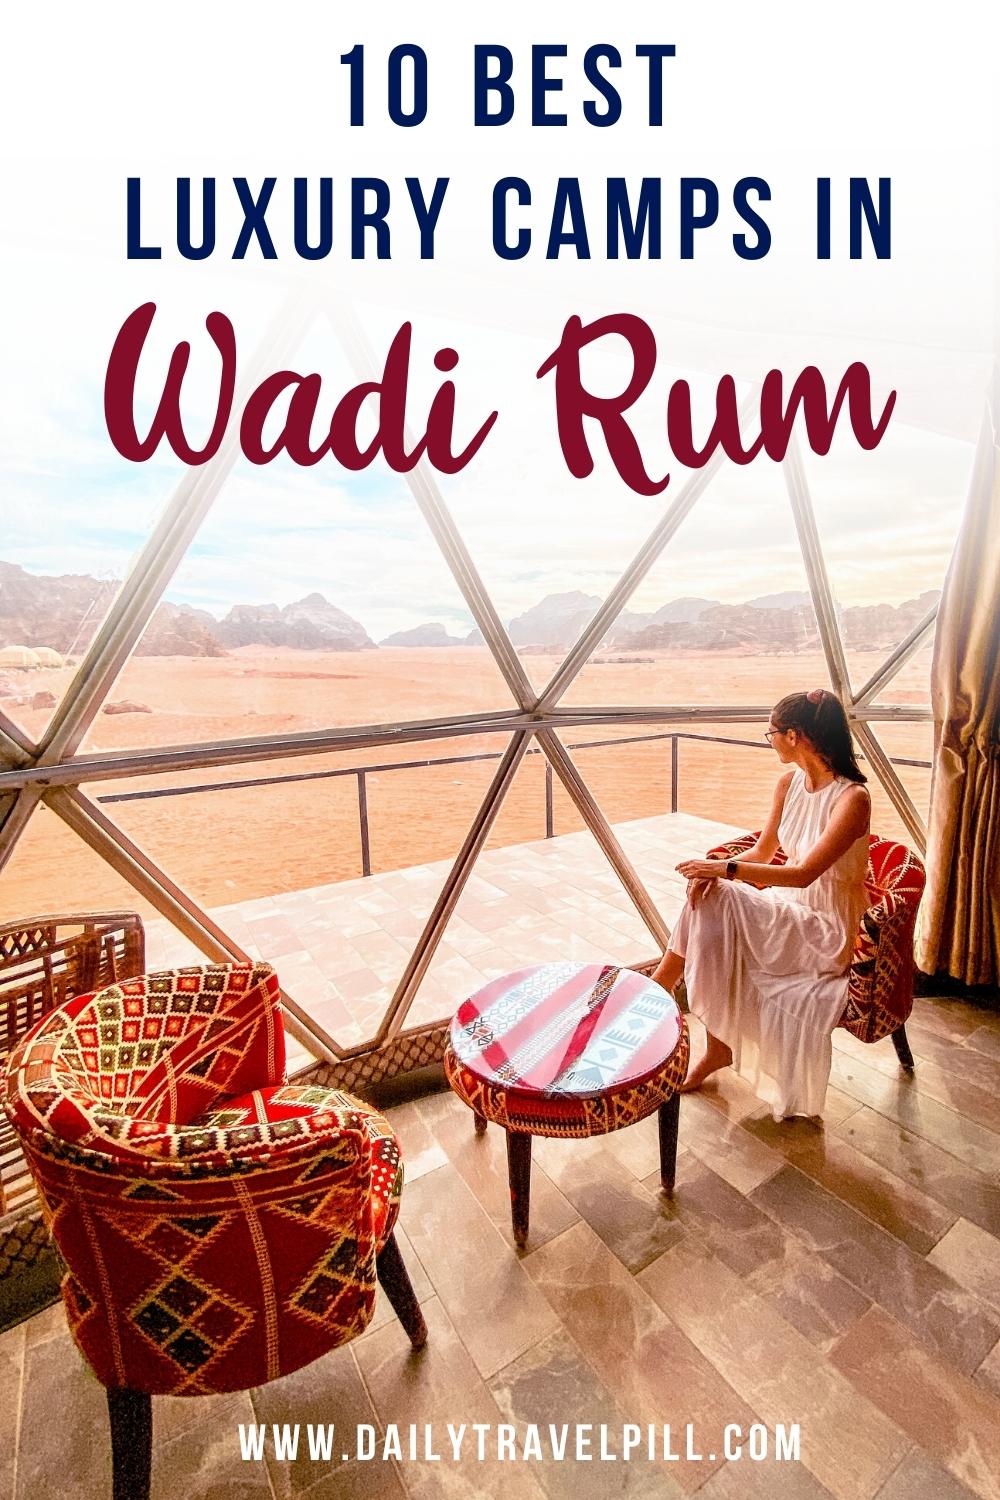 luxury camp wadi rum, wadi rum camping, wadi rum glamping, camping in wadi rum, best wadi rum camps, luxury camps in wadi rum, top camps in wadi rum